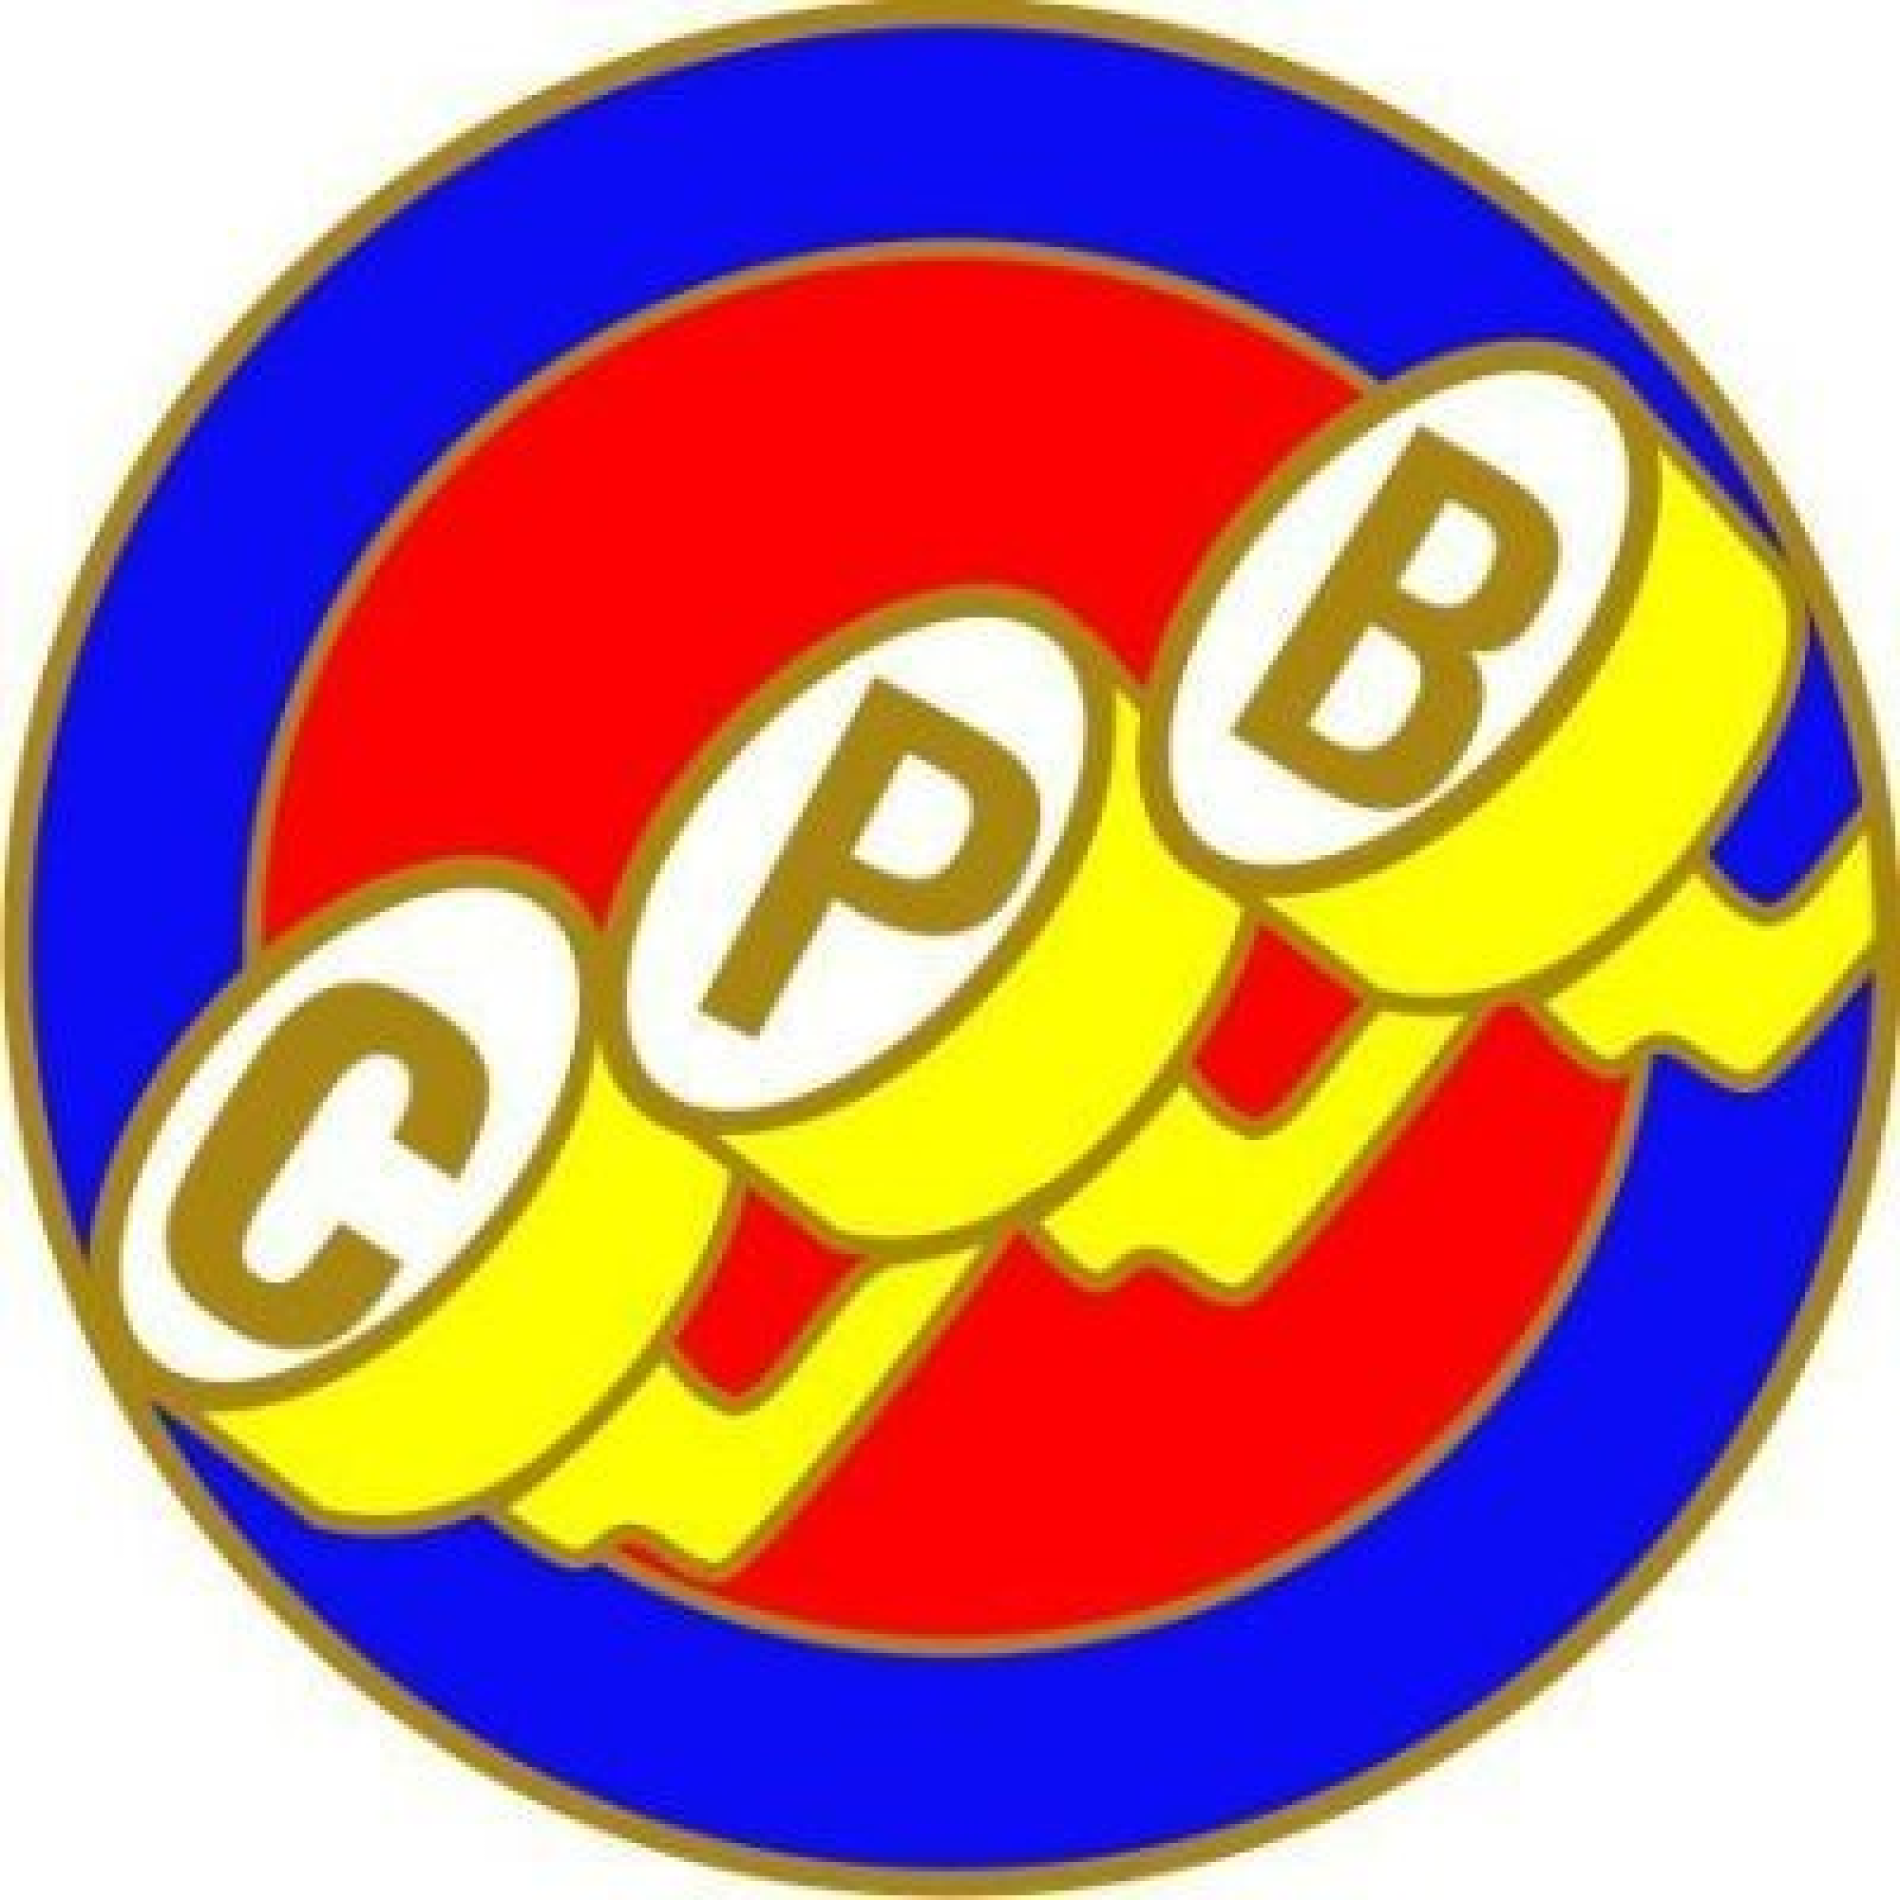 CPB rechaza amenazas contra la directora del periódico La Opinión